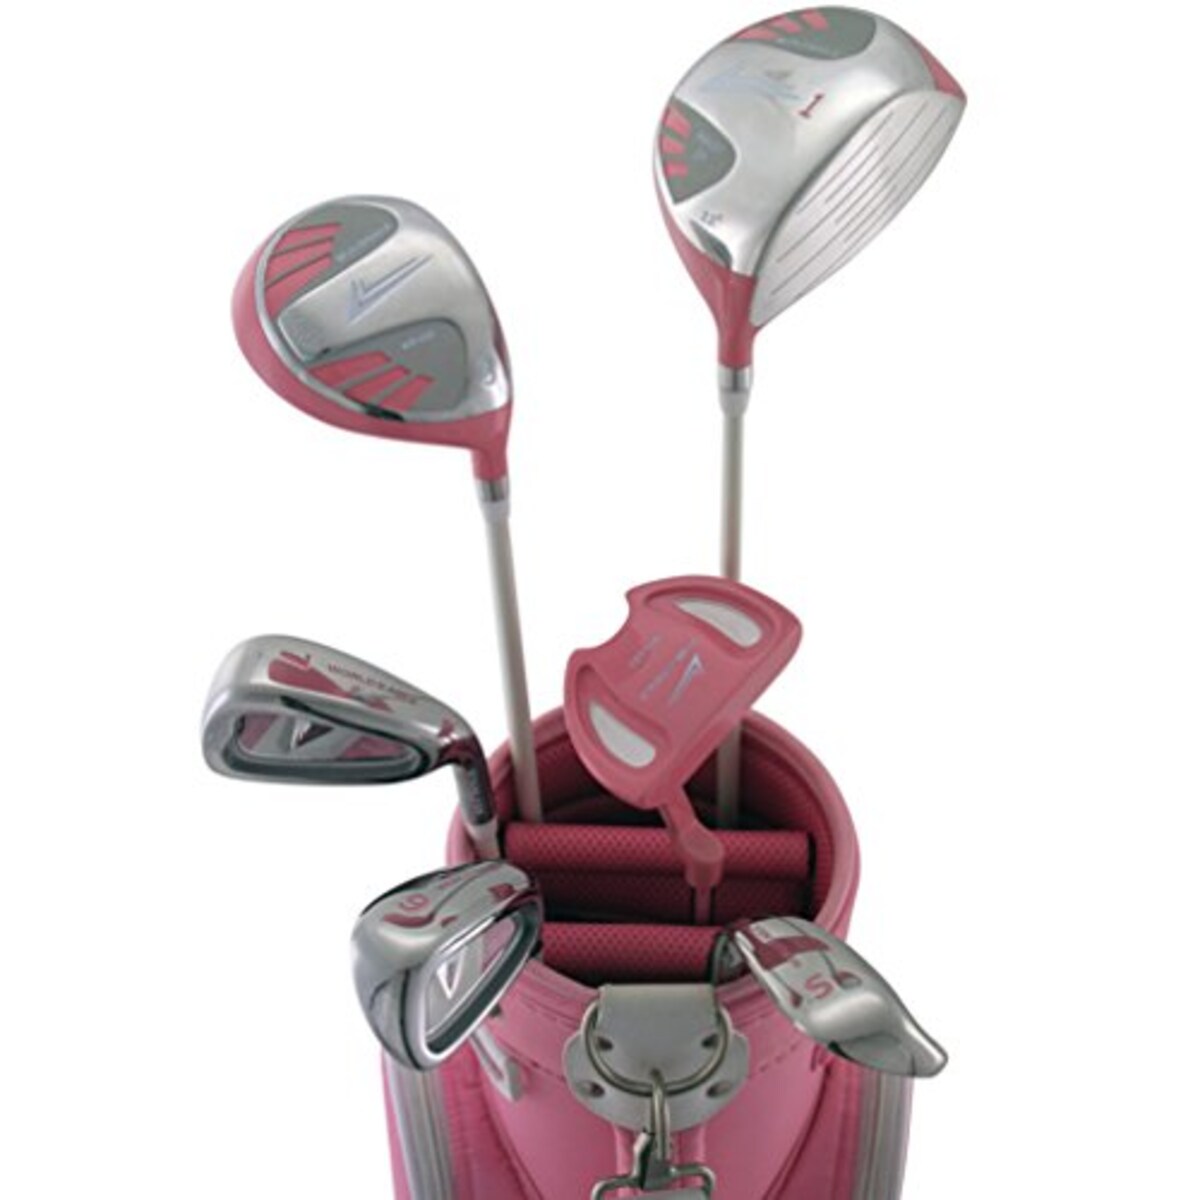  101 レディース ゴルフ ハーフセット 右用 ピンク画像